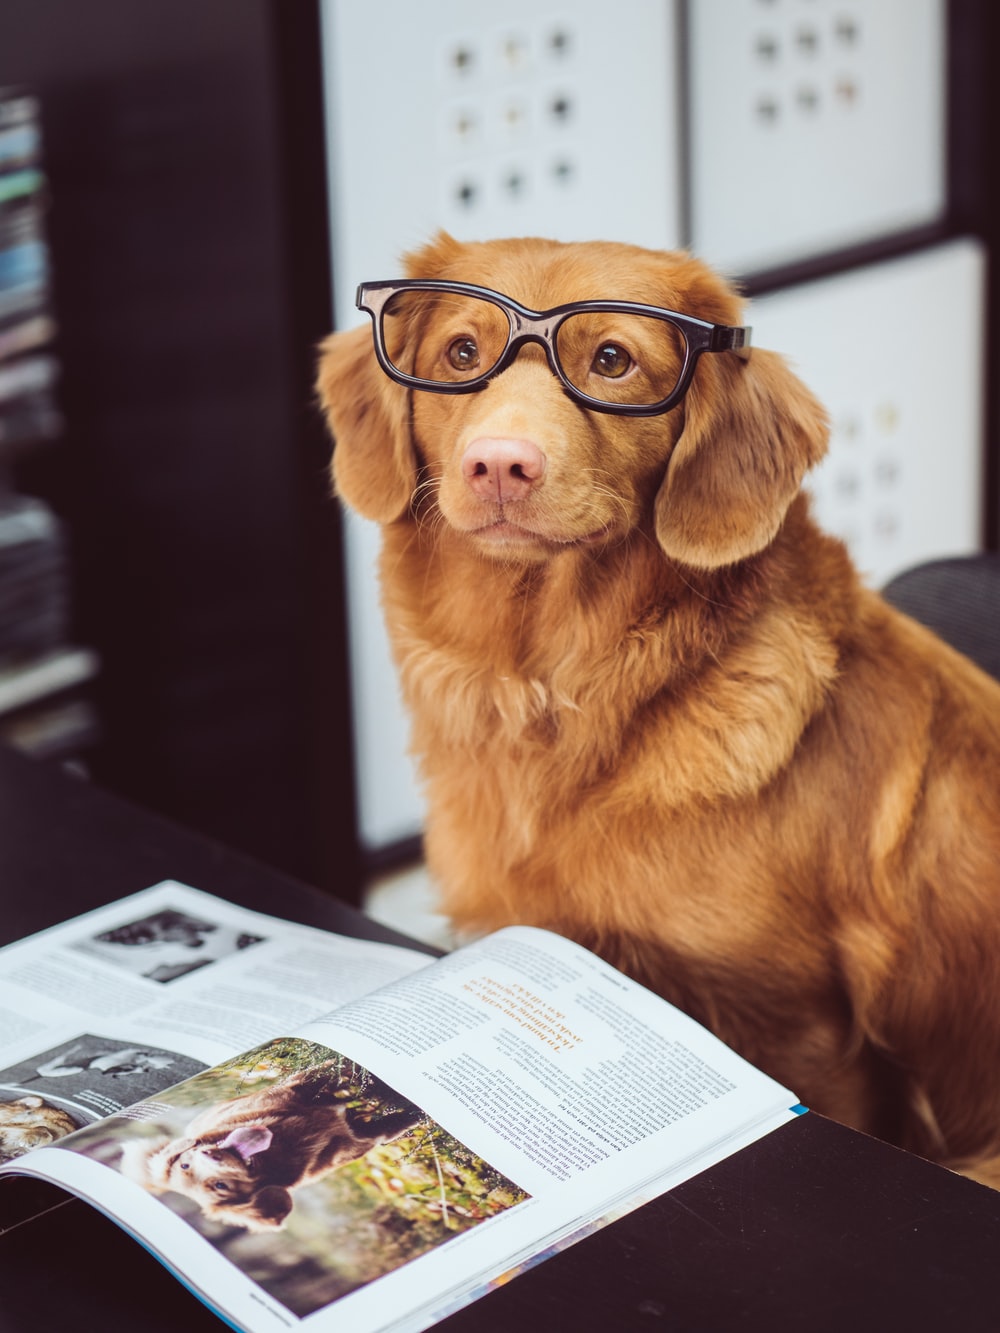 Hình ảnh chú chó đeo kính học bài